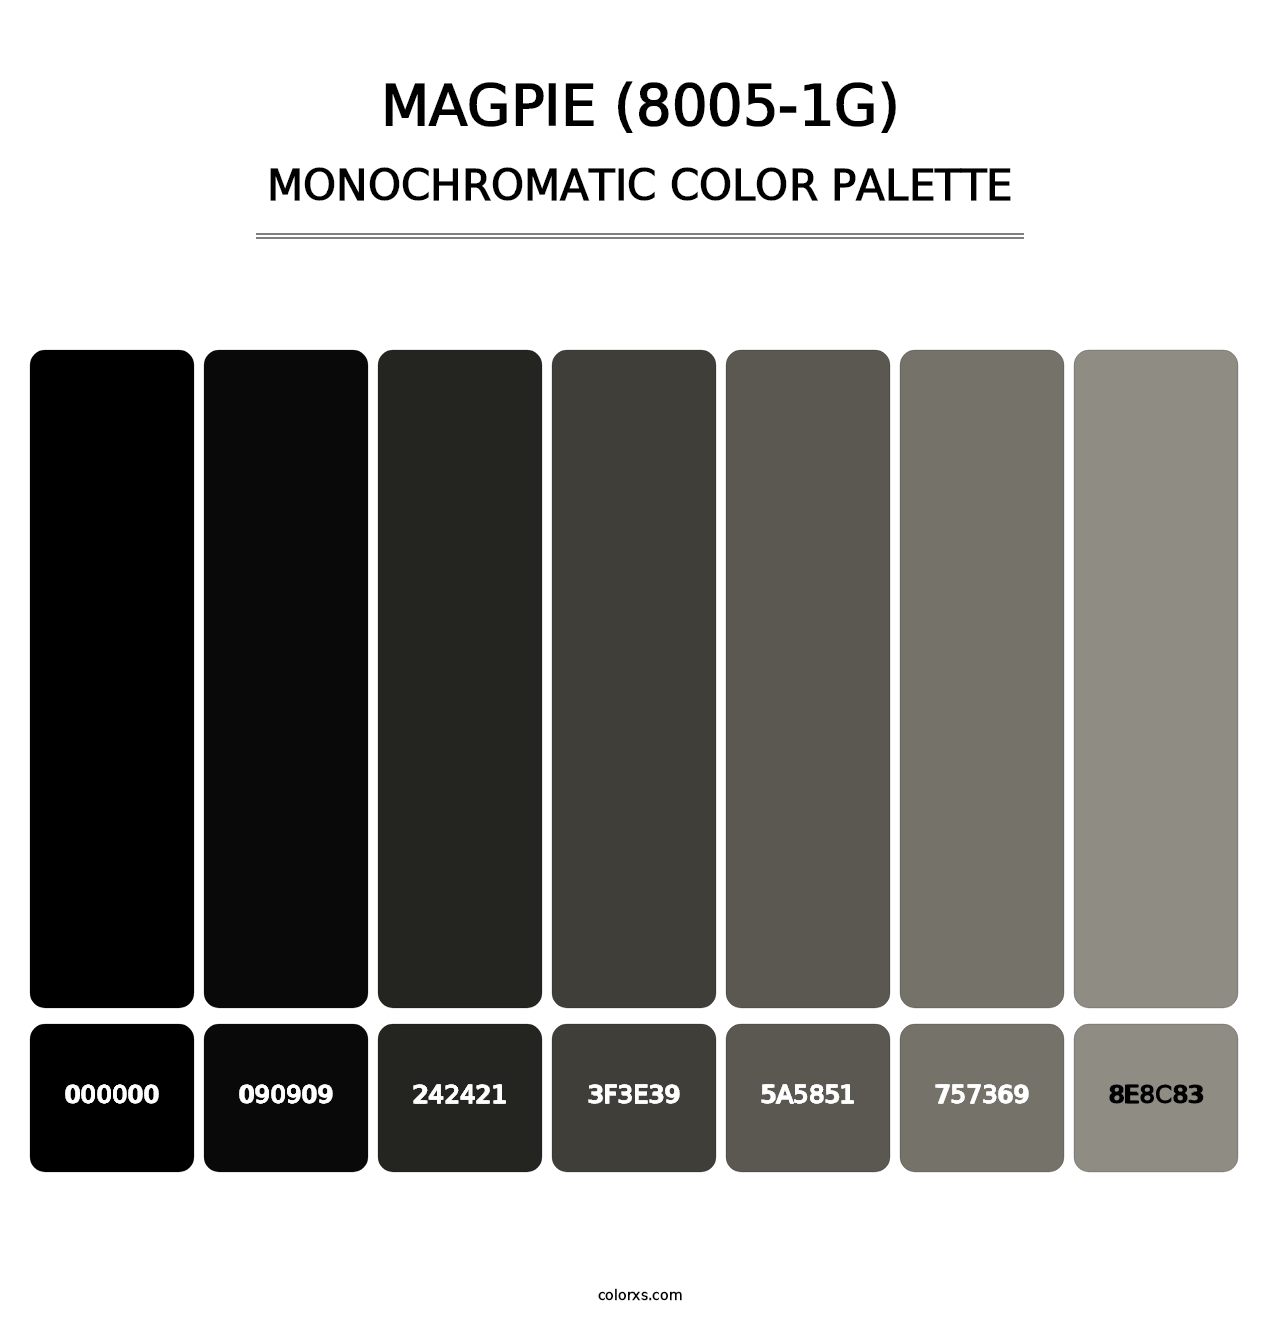 Magpie (8005-1G) - Monochromatic Color Palette